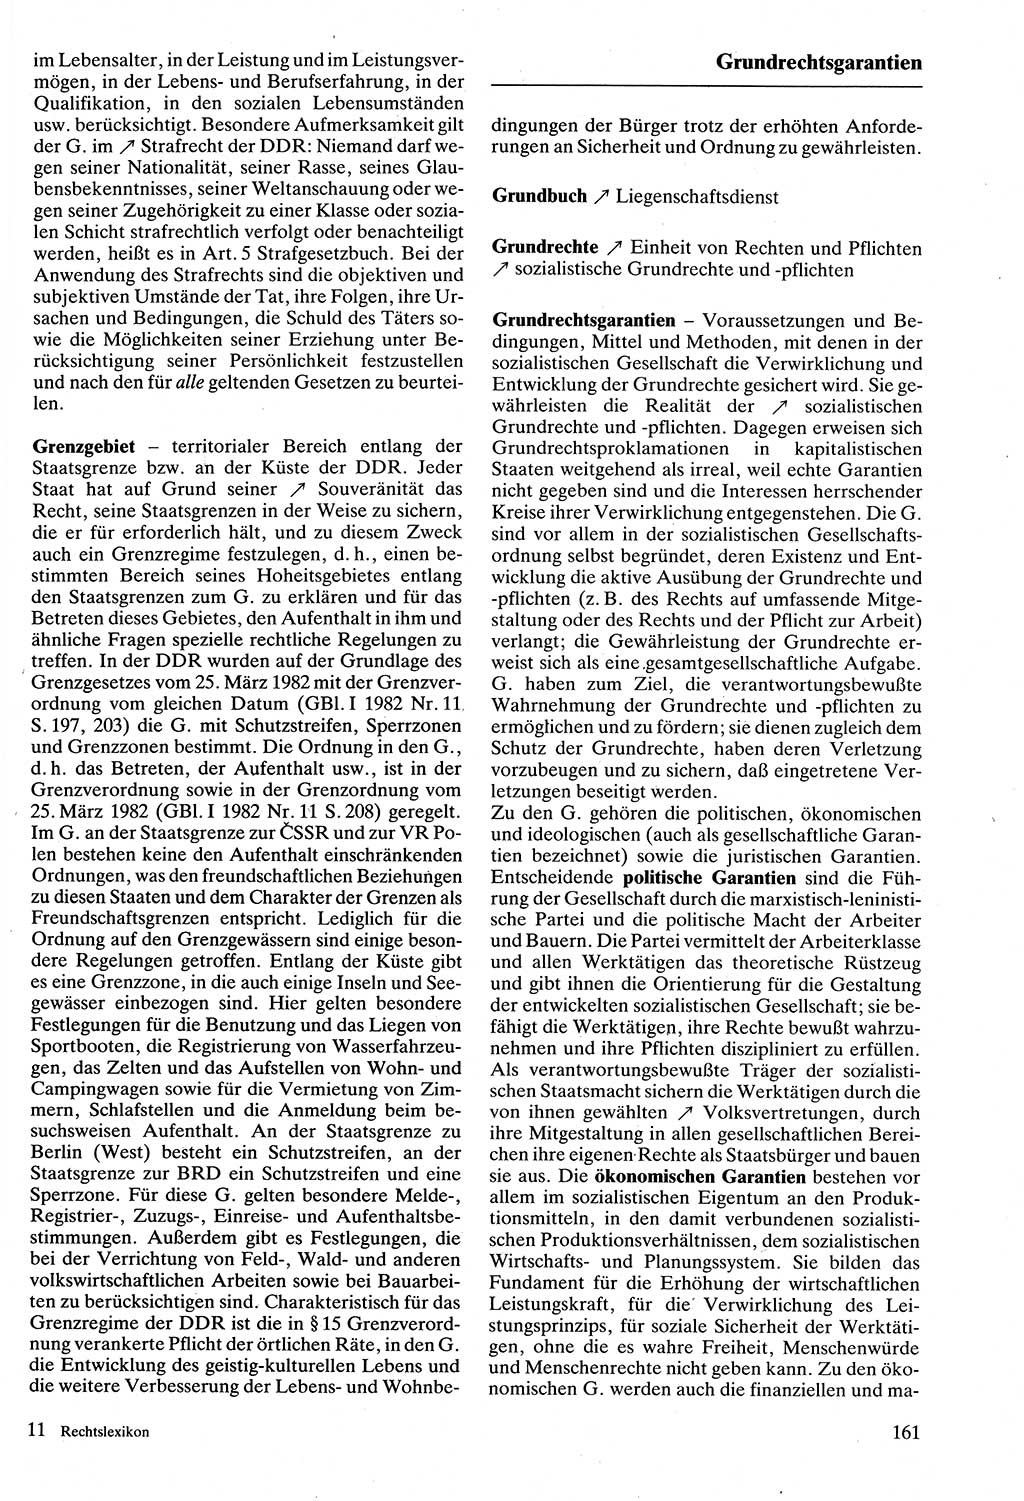 Rechtslexikon [Deutsche Demokratische Republik (DDR)] 1988, Seite 161 (Rechtslex. DDR 1988, S. 161)